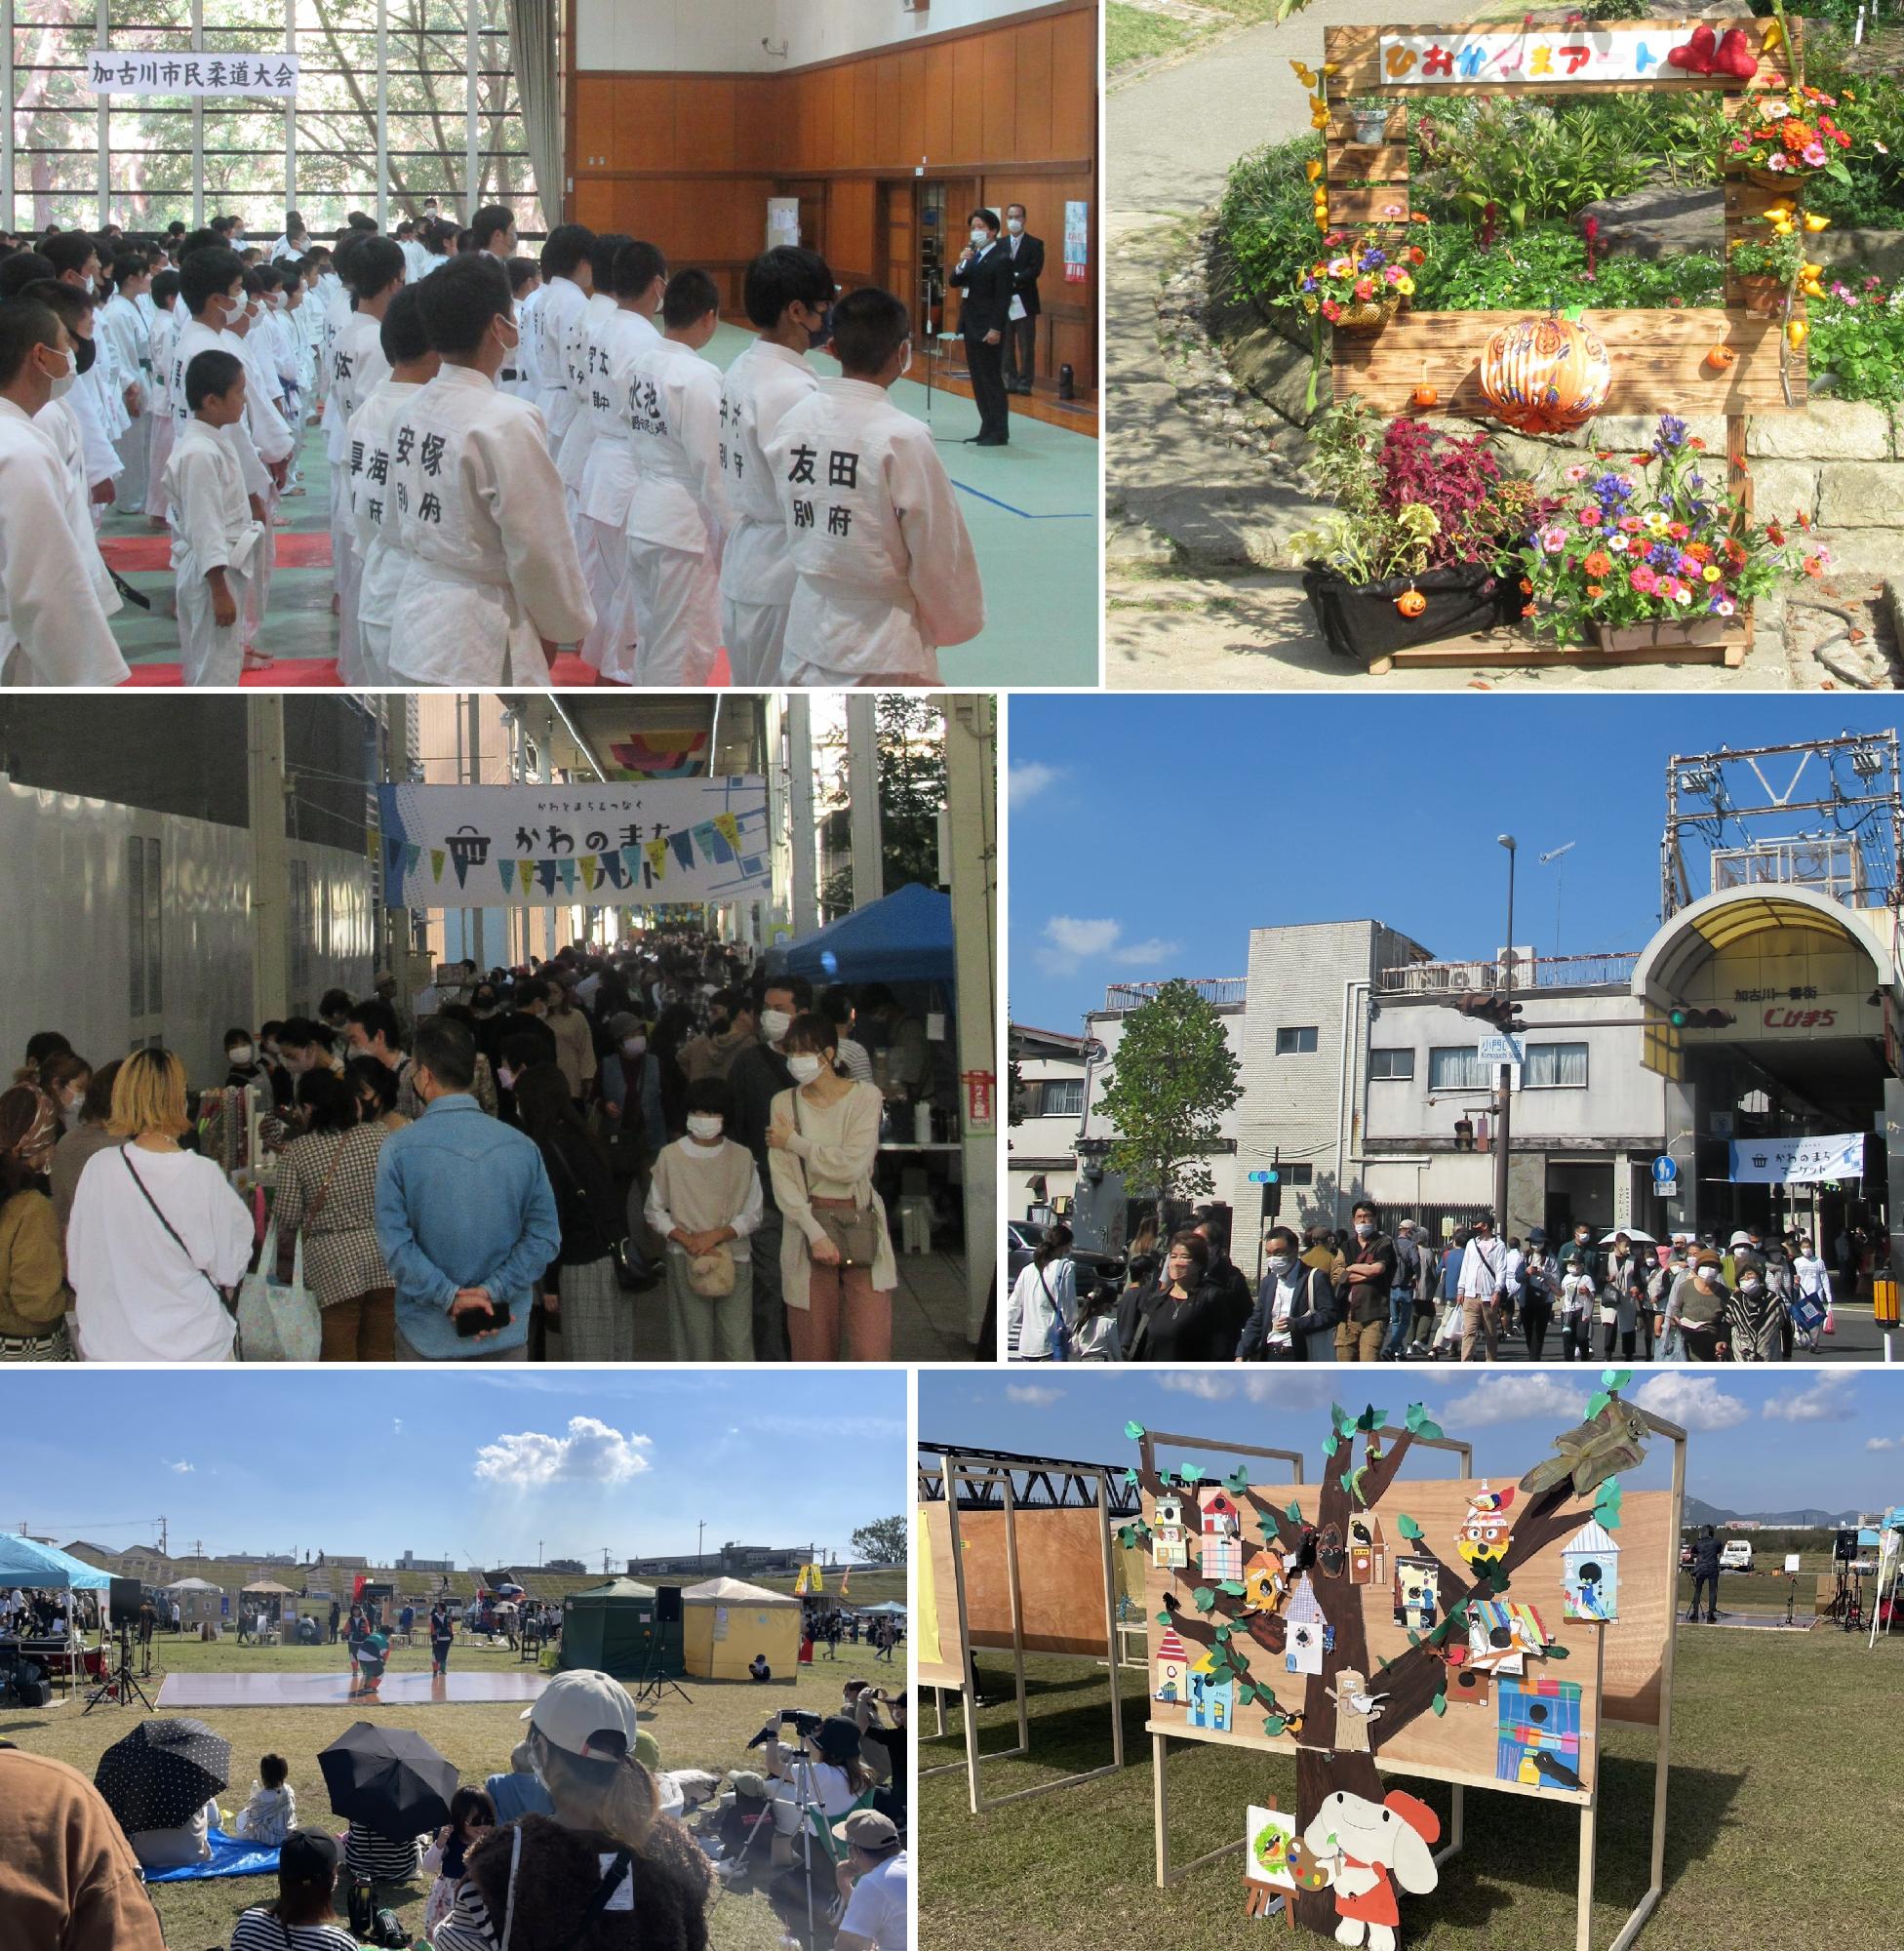 柔道大会、日岡山パブリックアート展、かわのまちマーケット、かわまちづくり